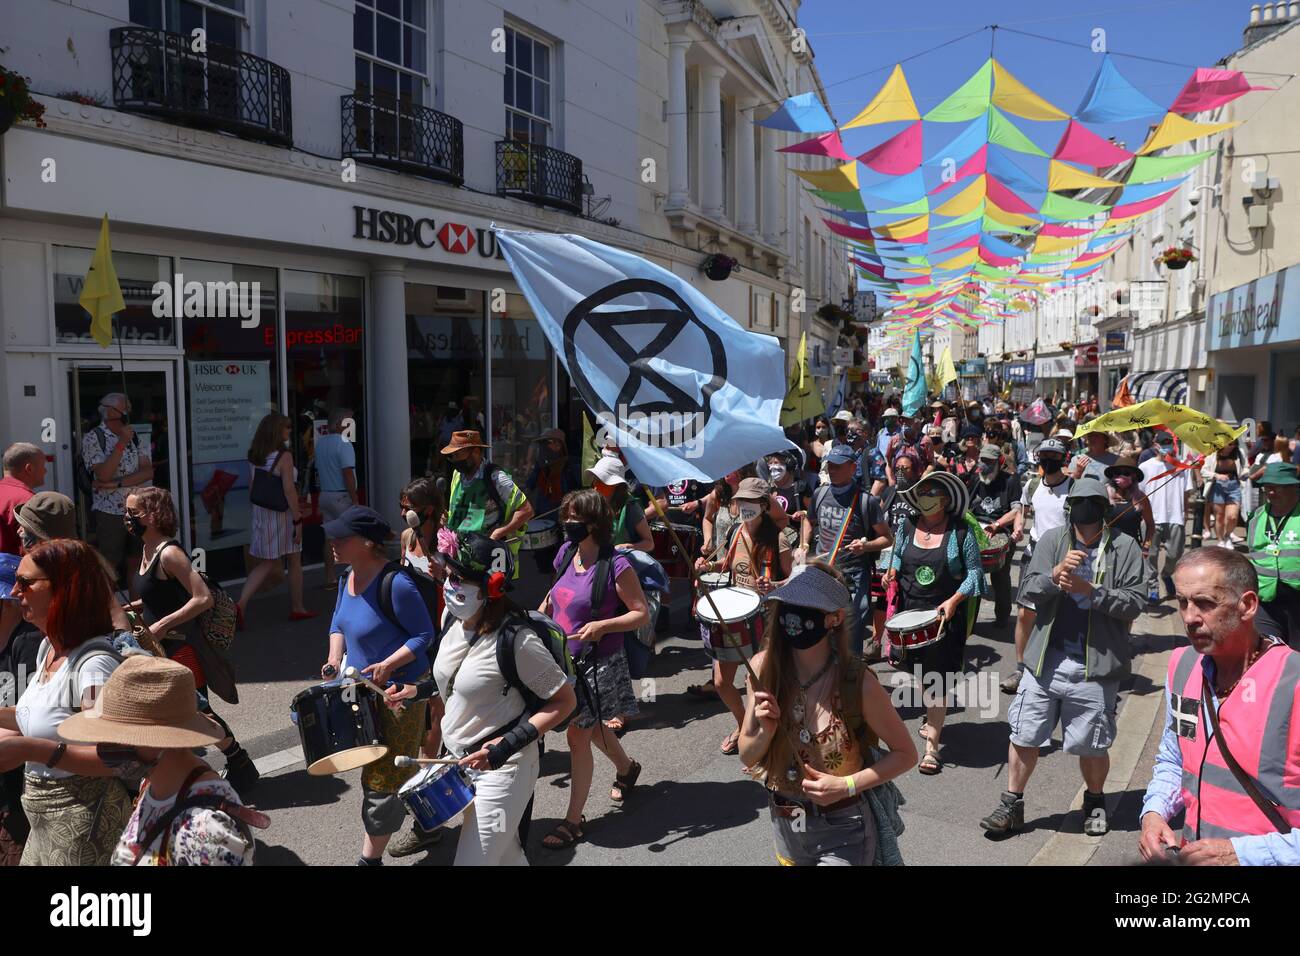 Demonstranten marschieren während einer Rebellions-Demonstration in Falmouth, während des G7-Gipfels in Cornwall, Großbritannien, am 12. Juni 2021. REUTERS/Tom Nicholson Stockfoto